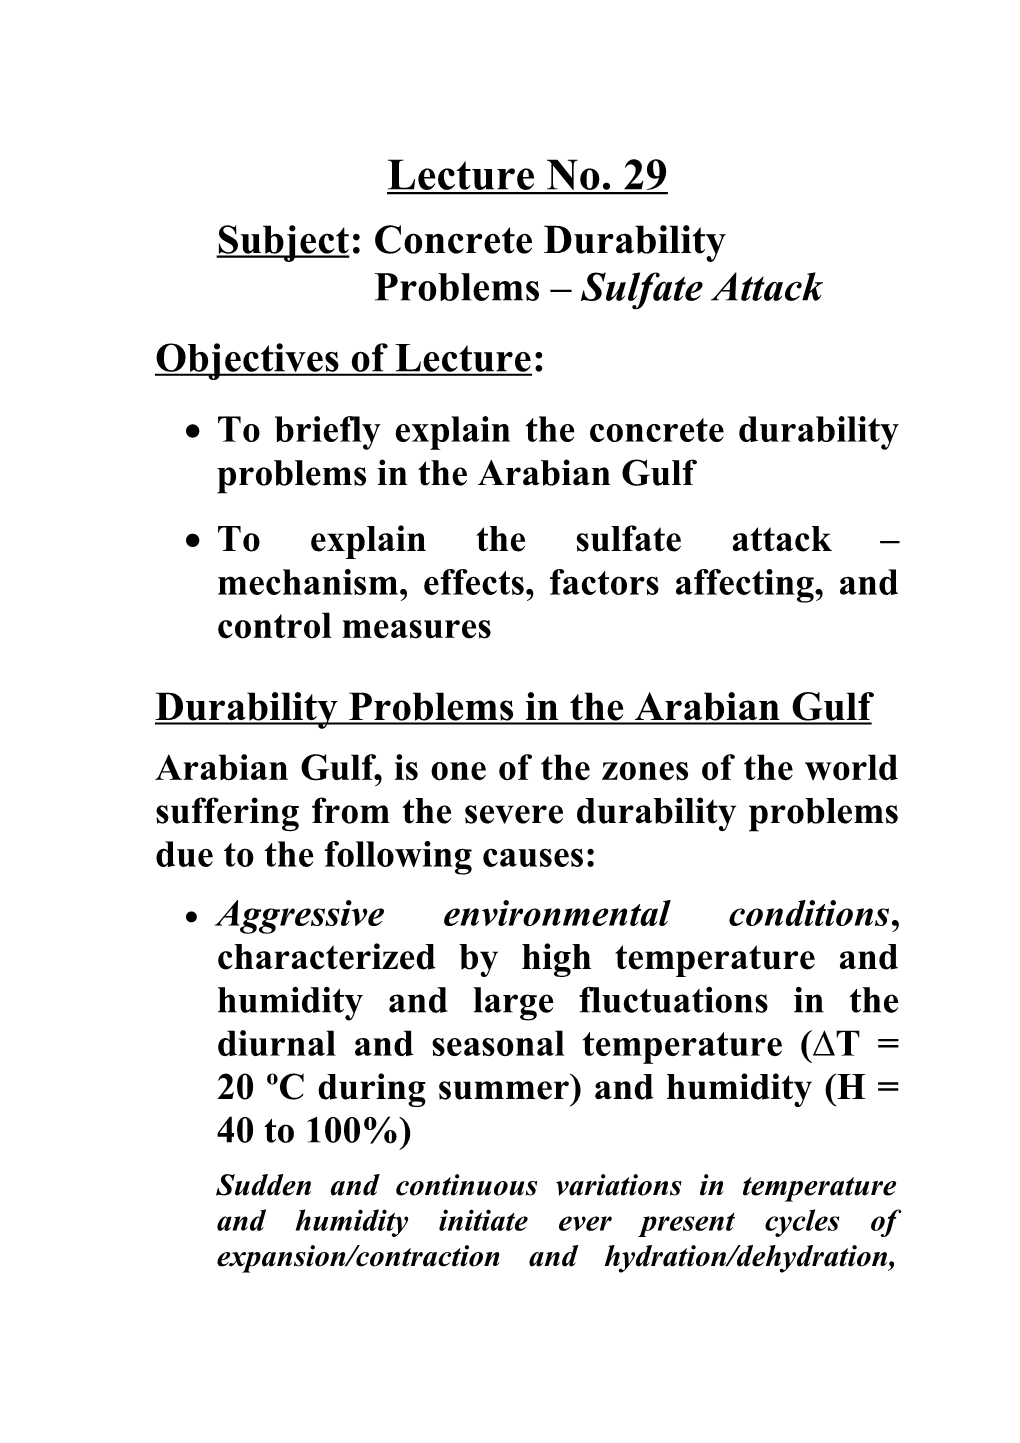 Subject: Concrete Durability Problems Sulfate Attack